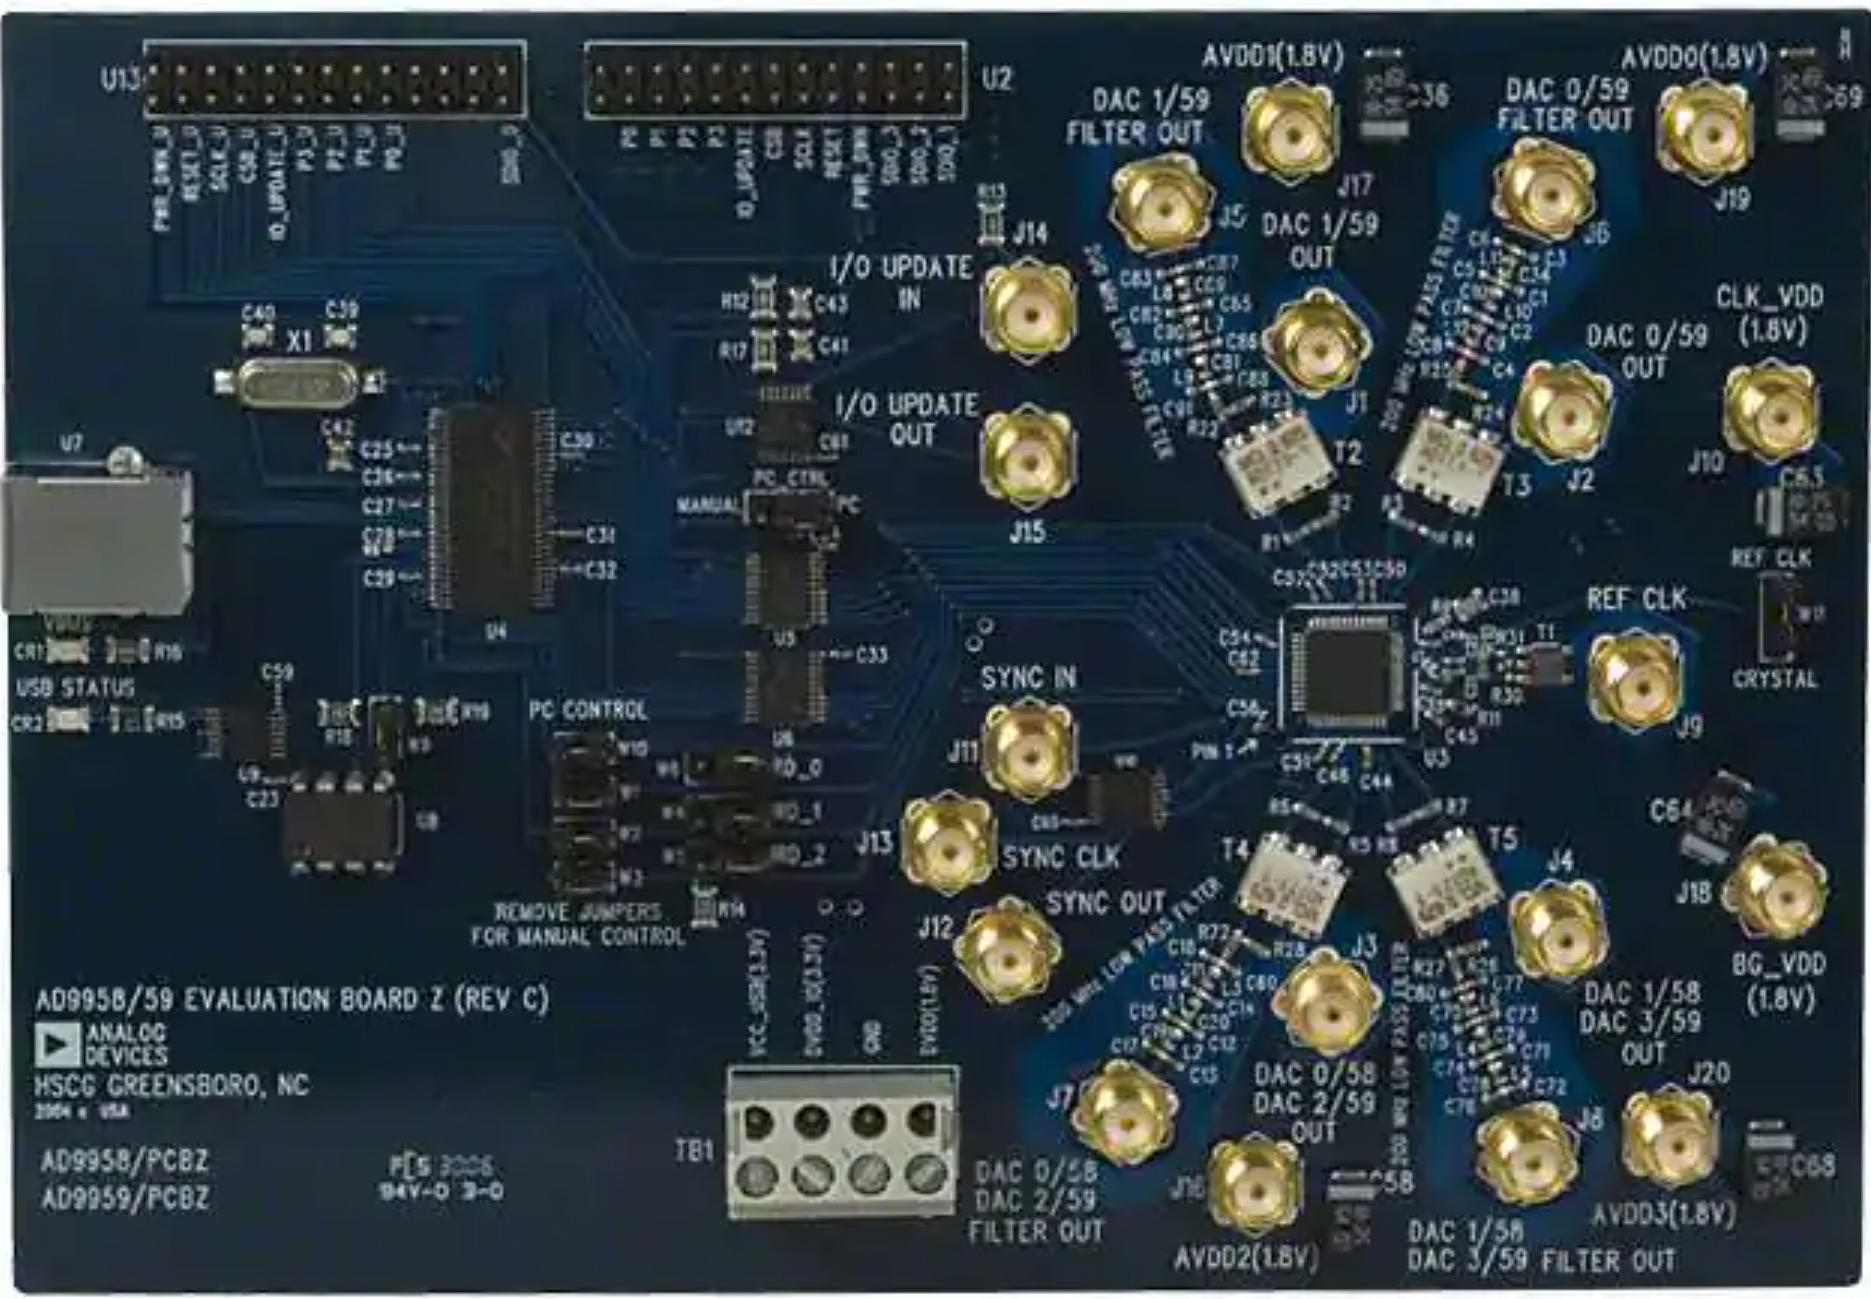 TFT LCD development board STM32F103 AD9959 0-200 MHz DDS Générateur De Signal 